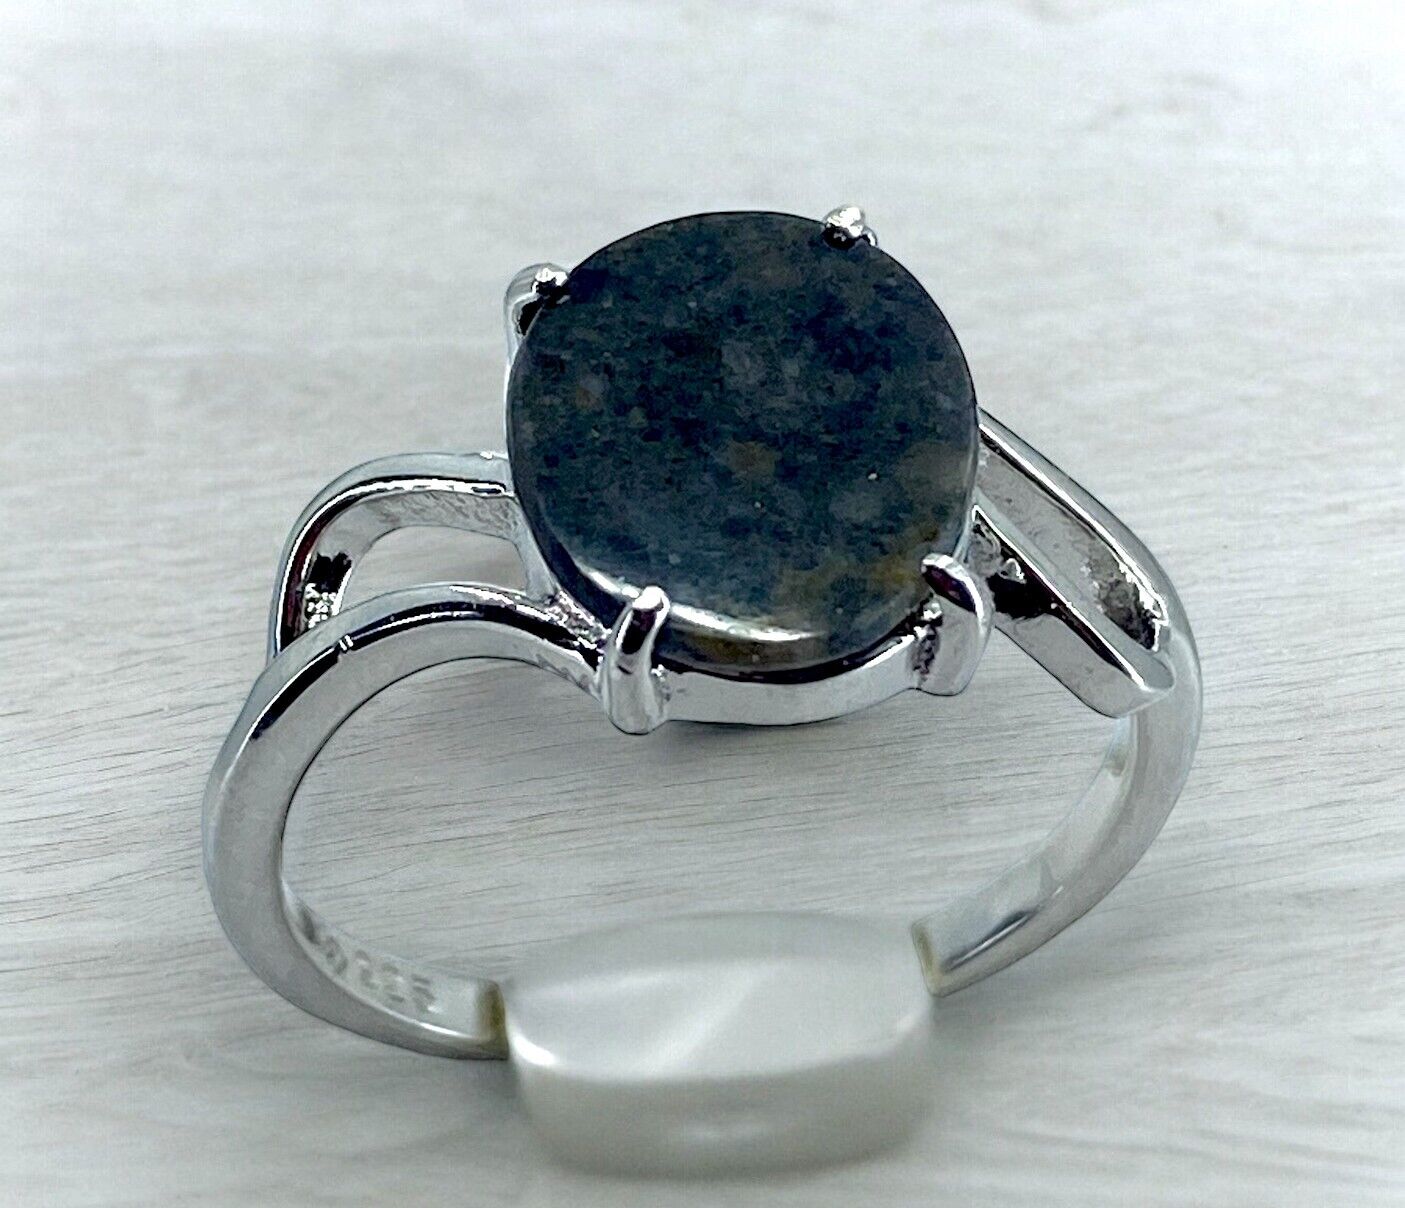 Moon Ring- Genuine Lunar Meteorite Jewelry - Size 6.25 - TOP METEORITE Jewelry